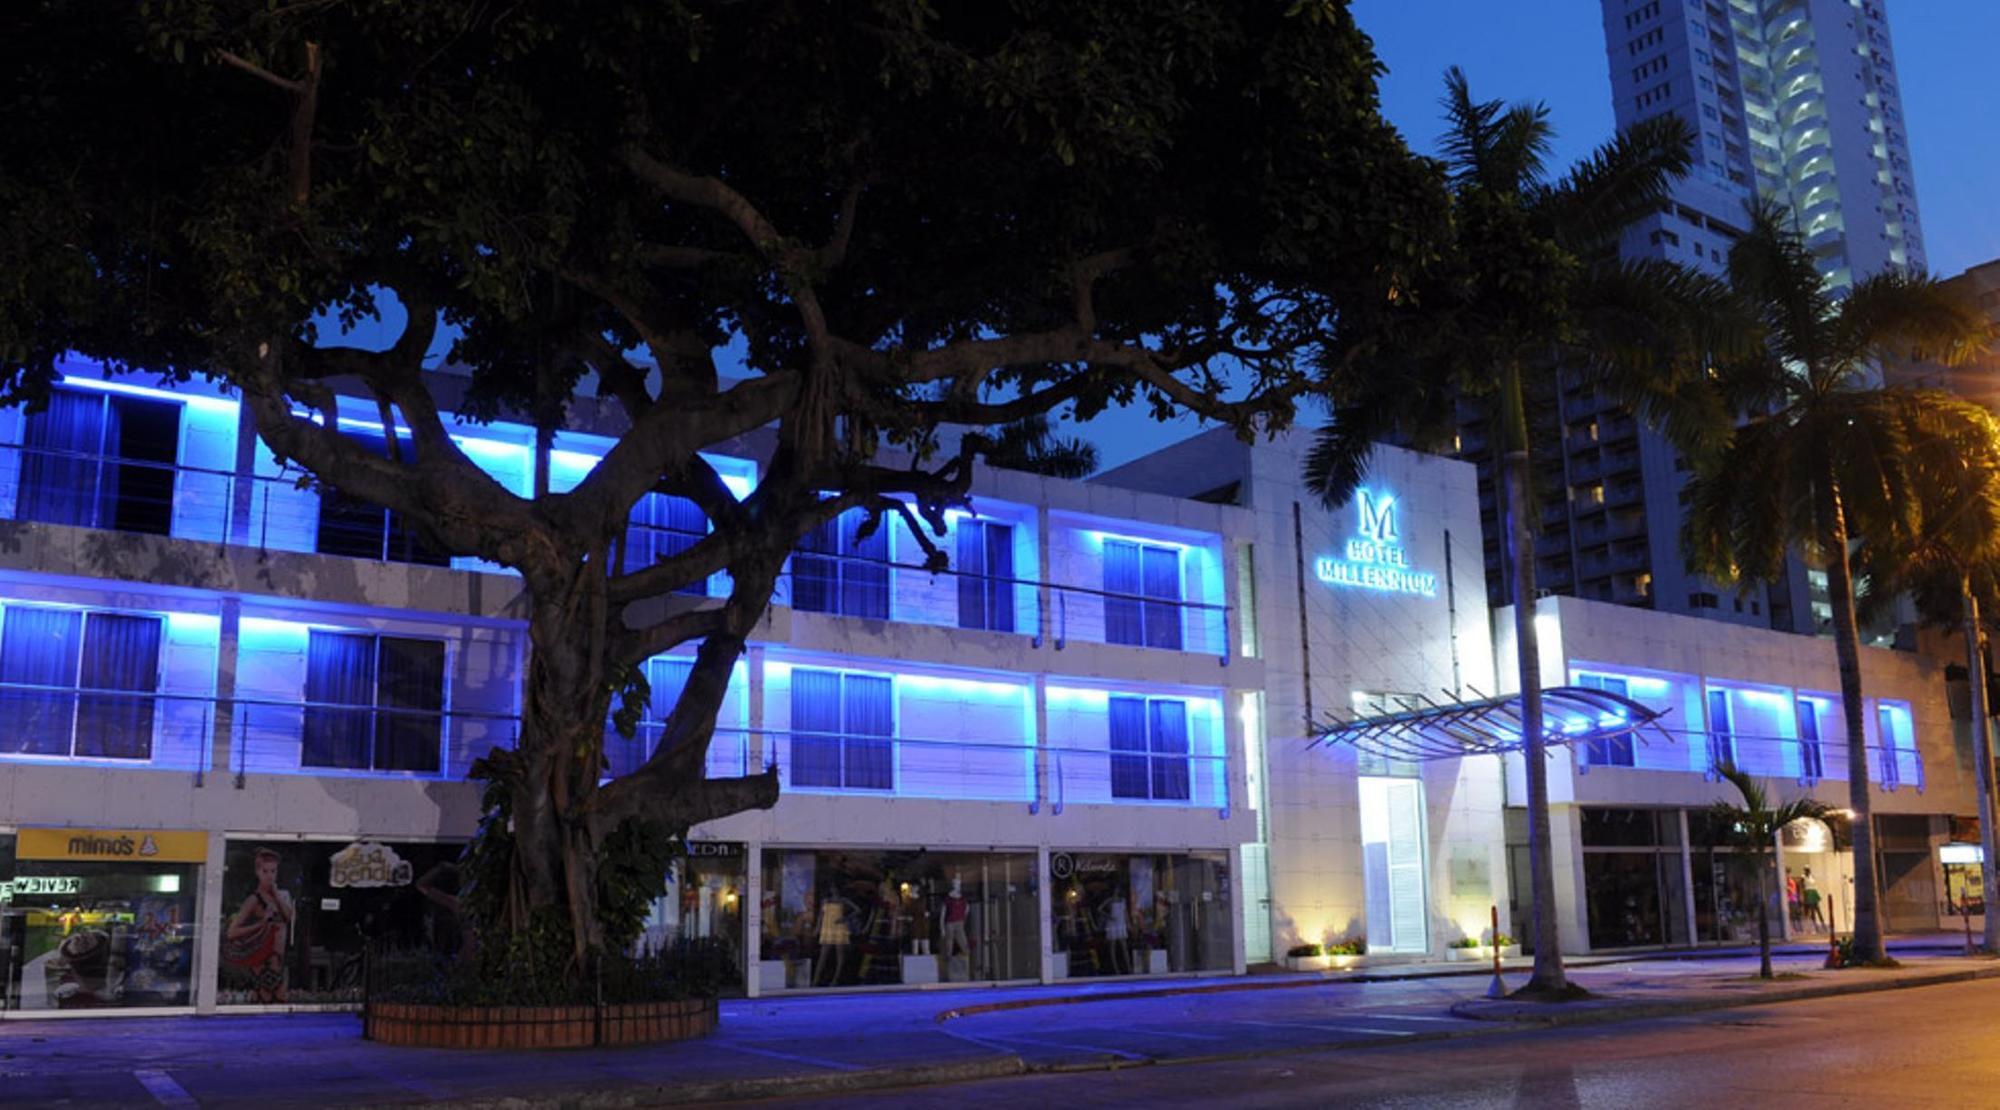 Madisson Boutique Hotel Cartagena Eksteriør billede